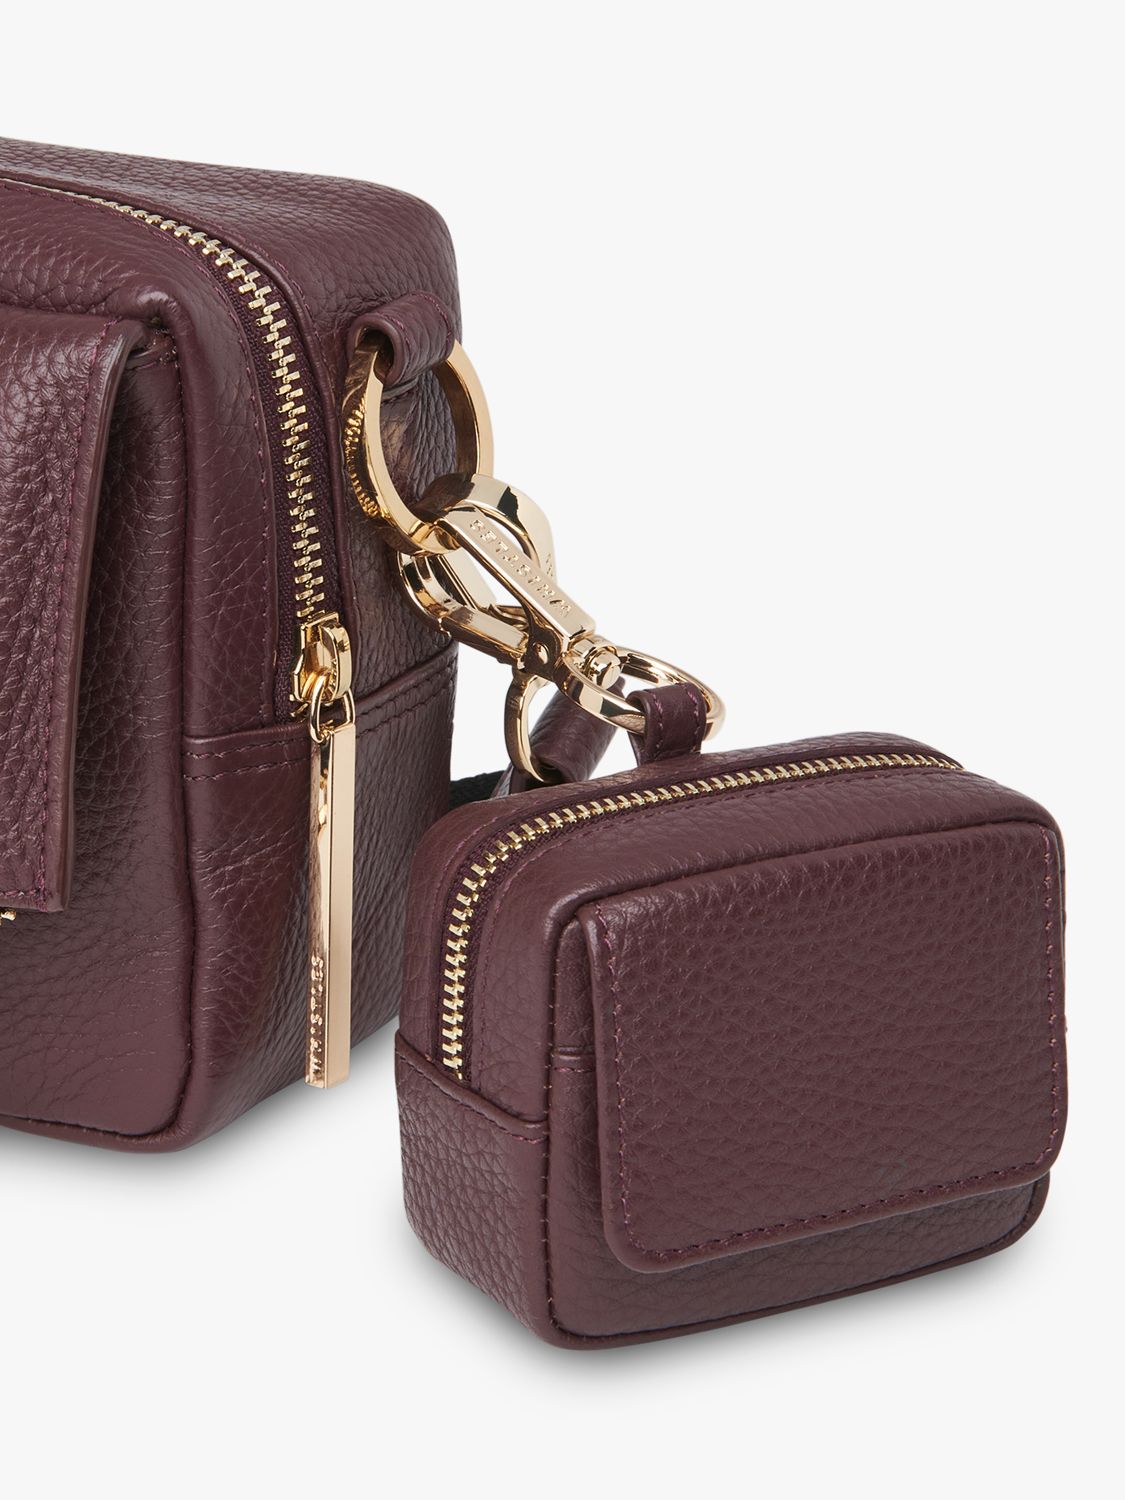 Whistles Bibi Mini Keyring Bag, Plum at John Lewis & Partners